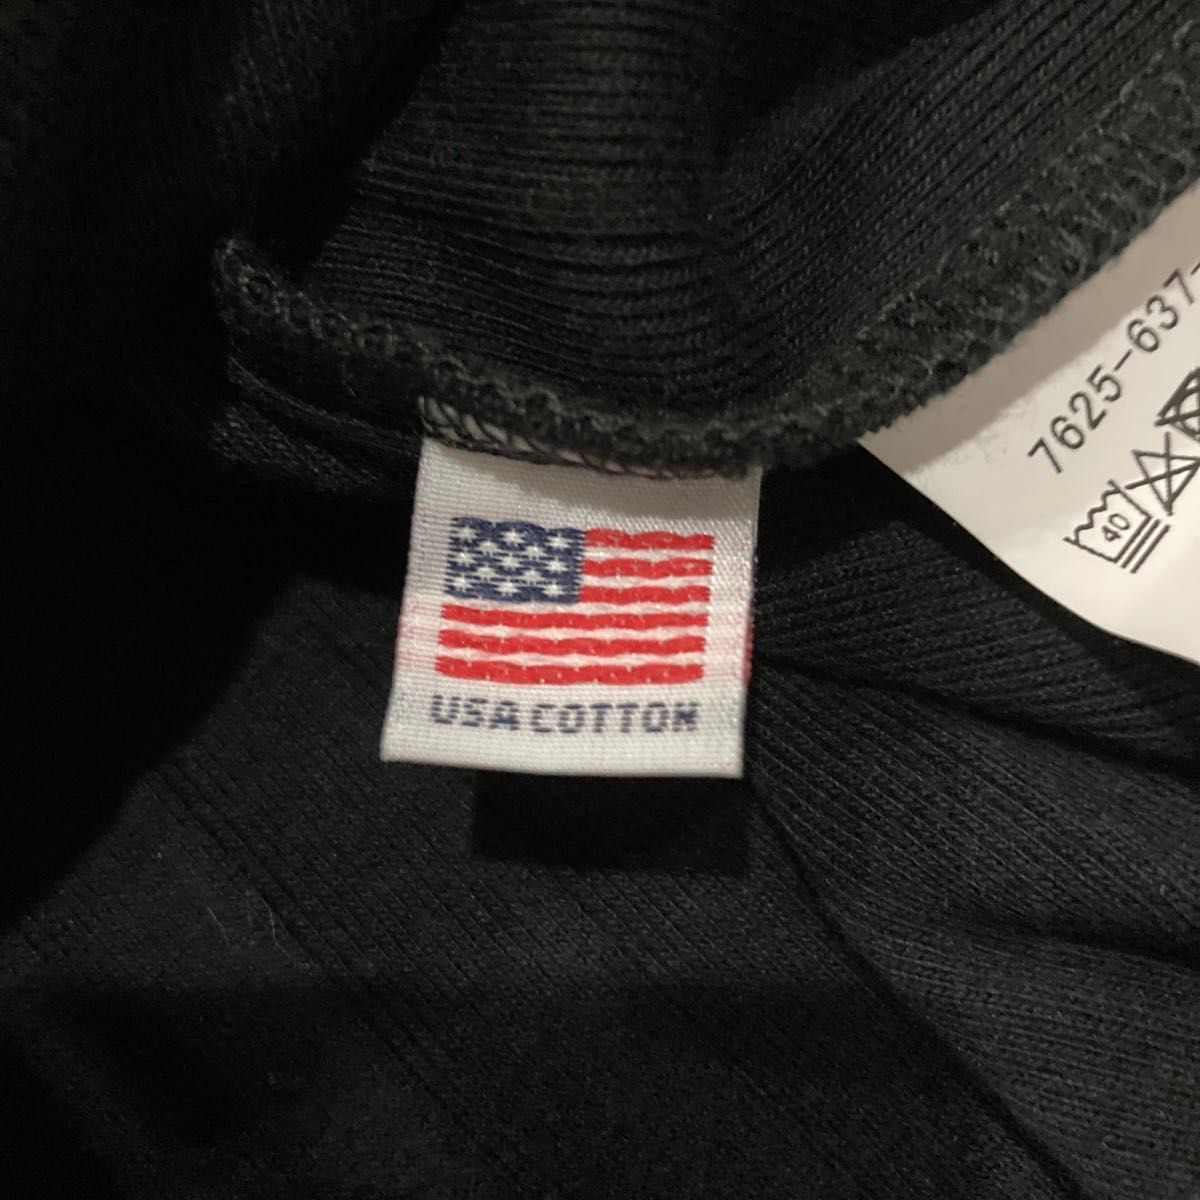 coen(コーエン)USAコットンハイネックフレンチスリーブワイドリブTシャツ黒